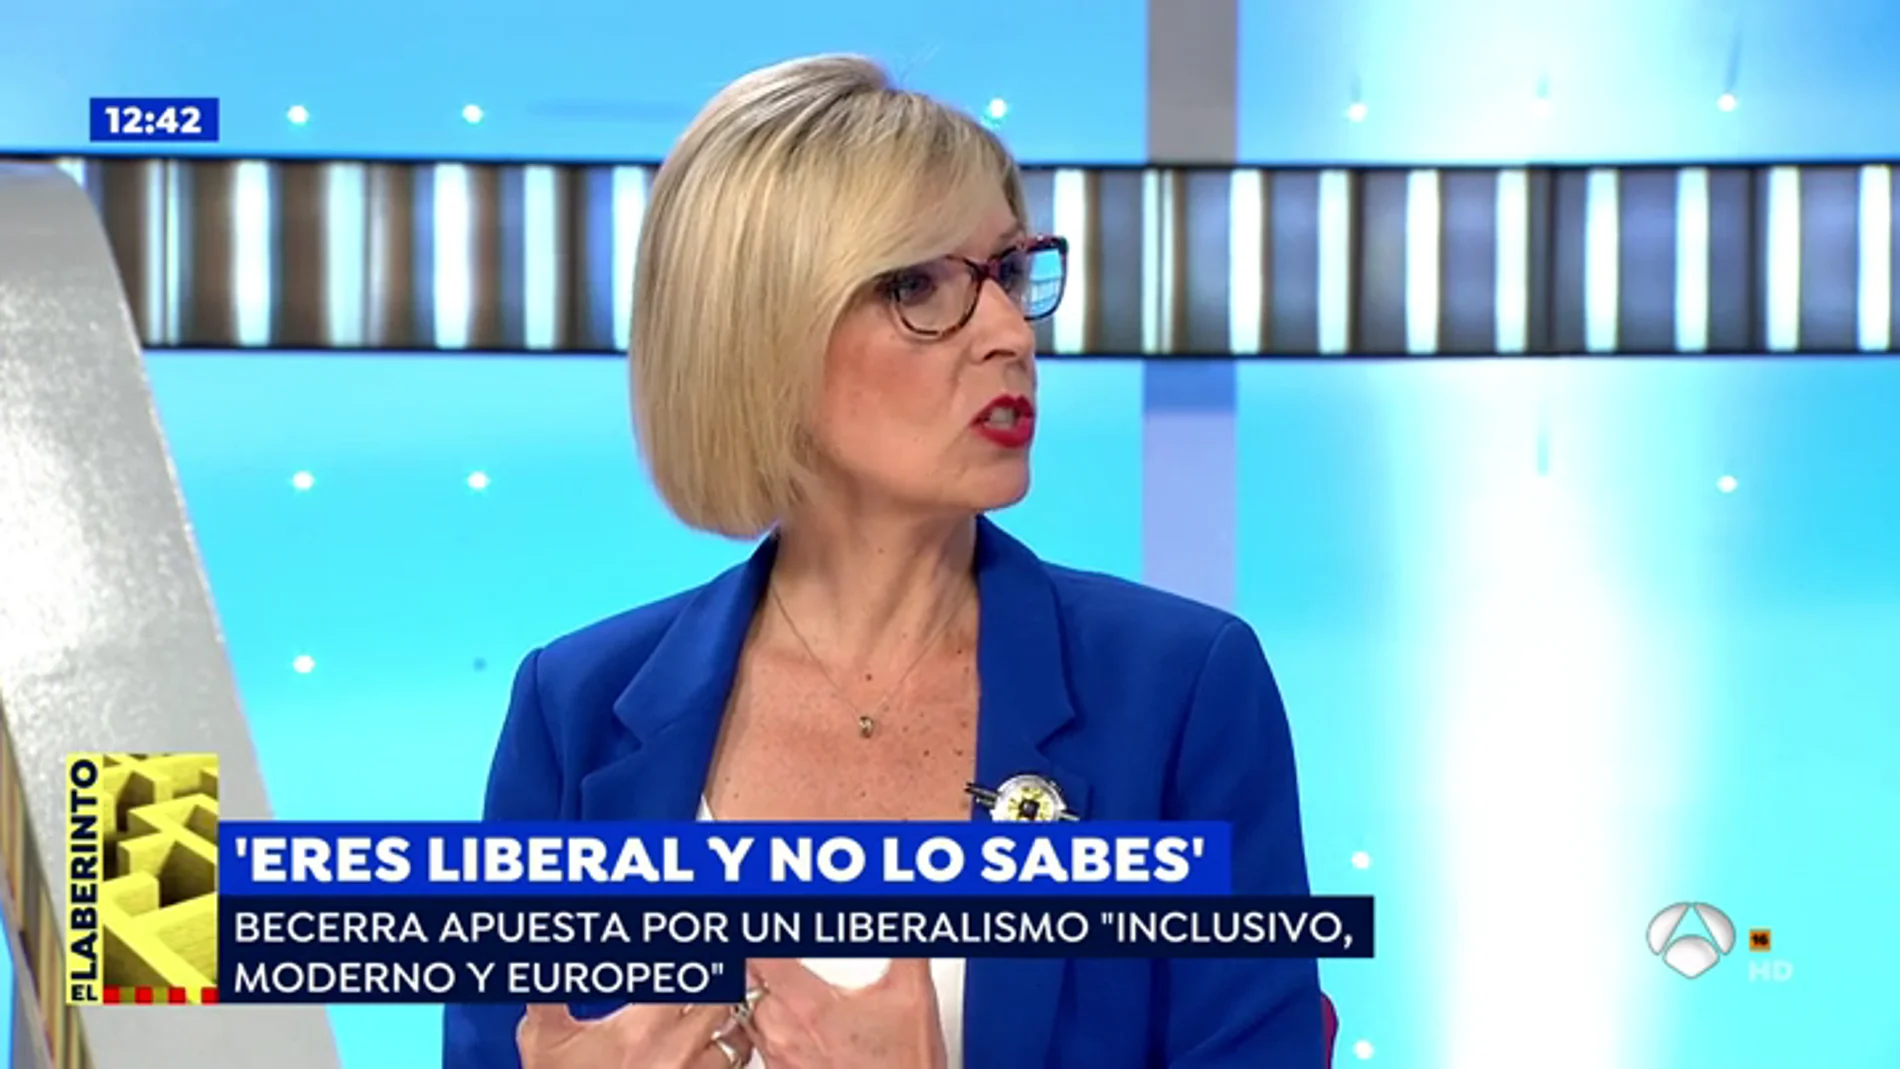 ¿Eres liberal y todavía no lo sabes?, la eurodiputada Beatriz Becerra te ayuda a descubrirlo en su nuevo libro